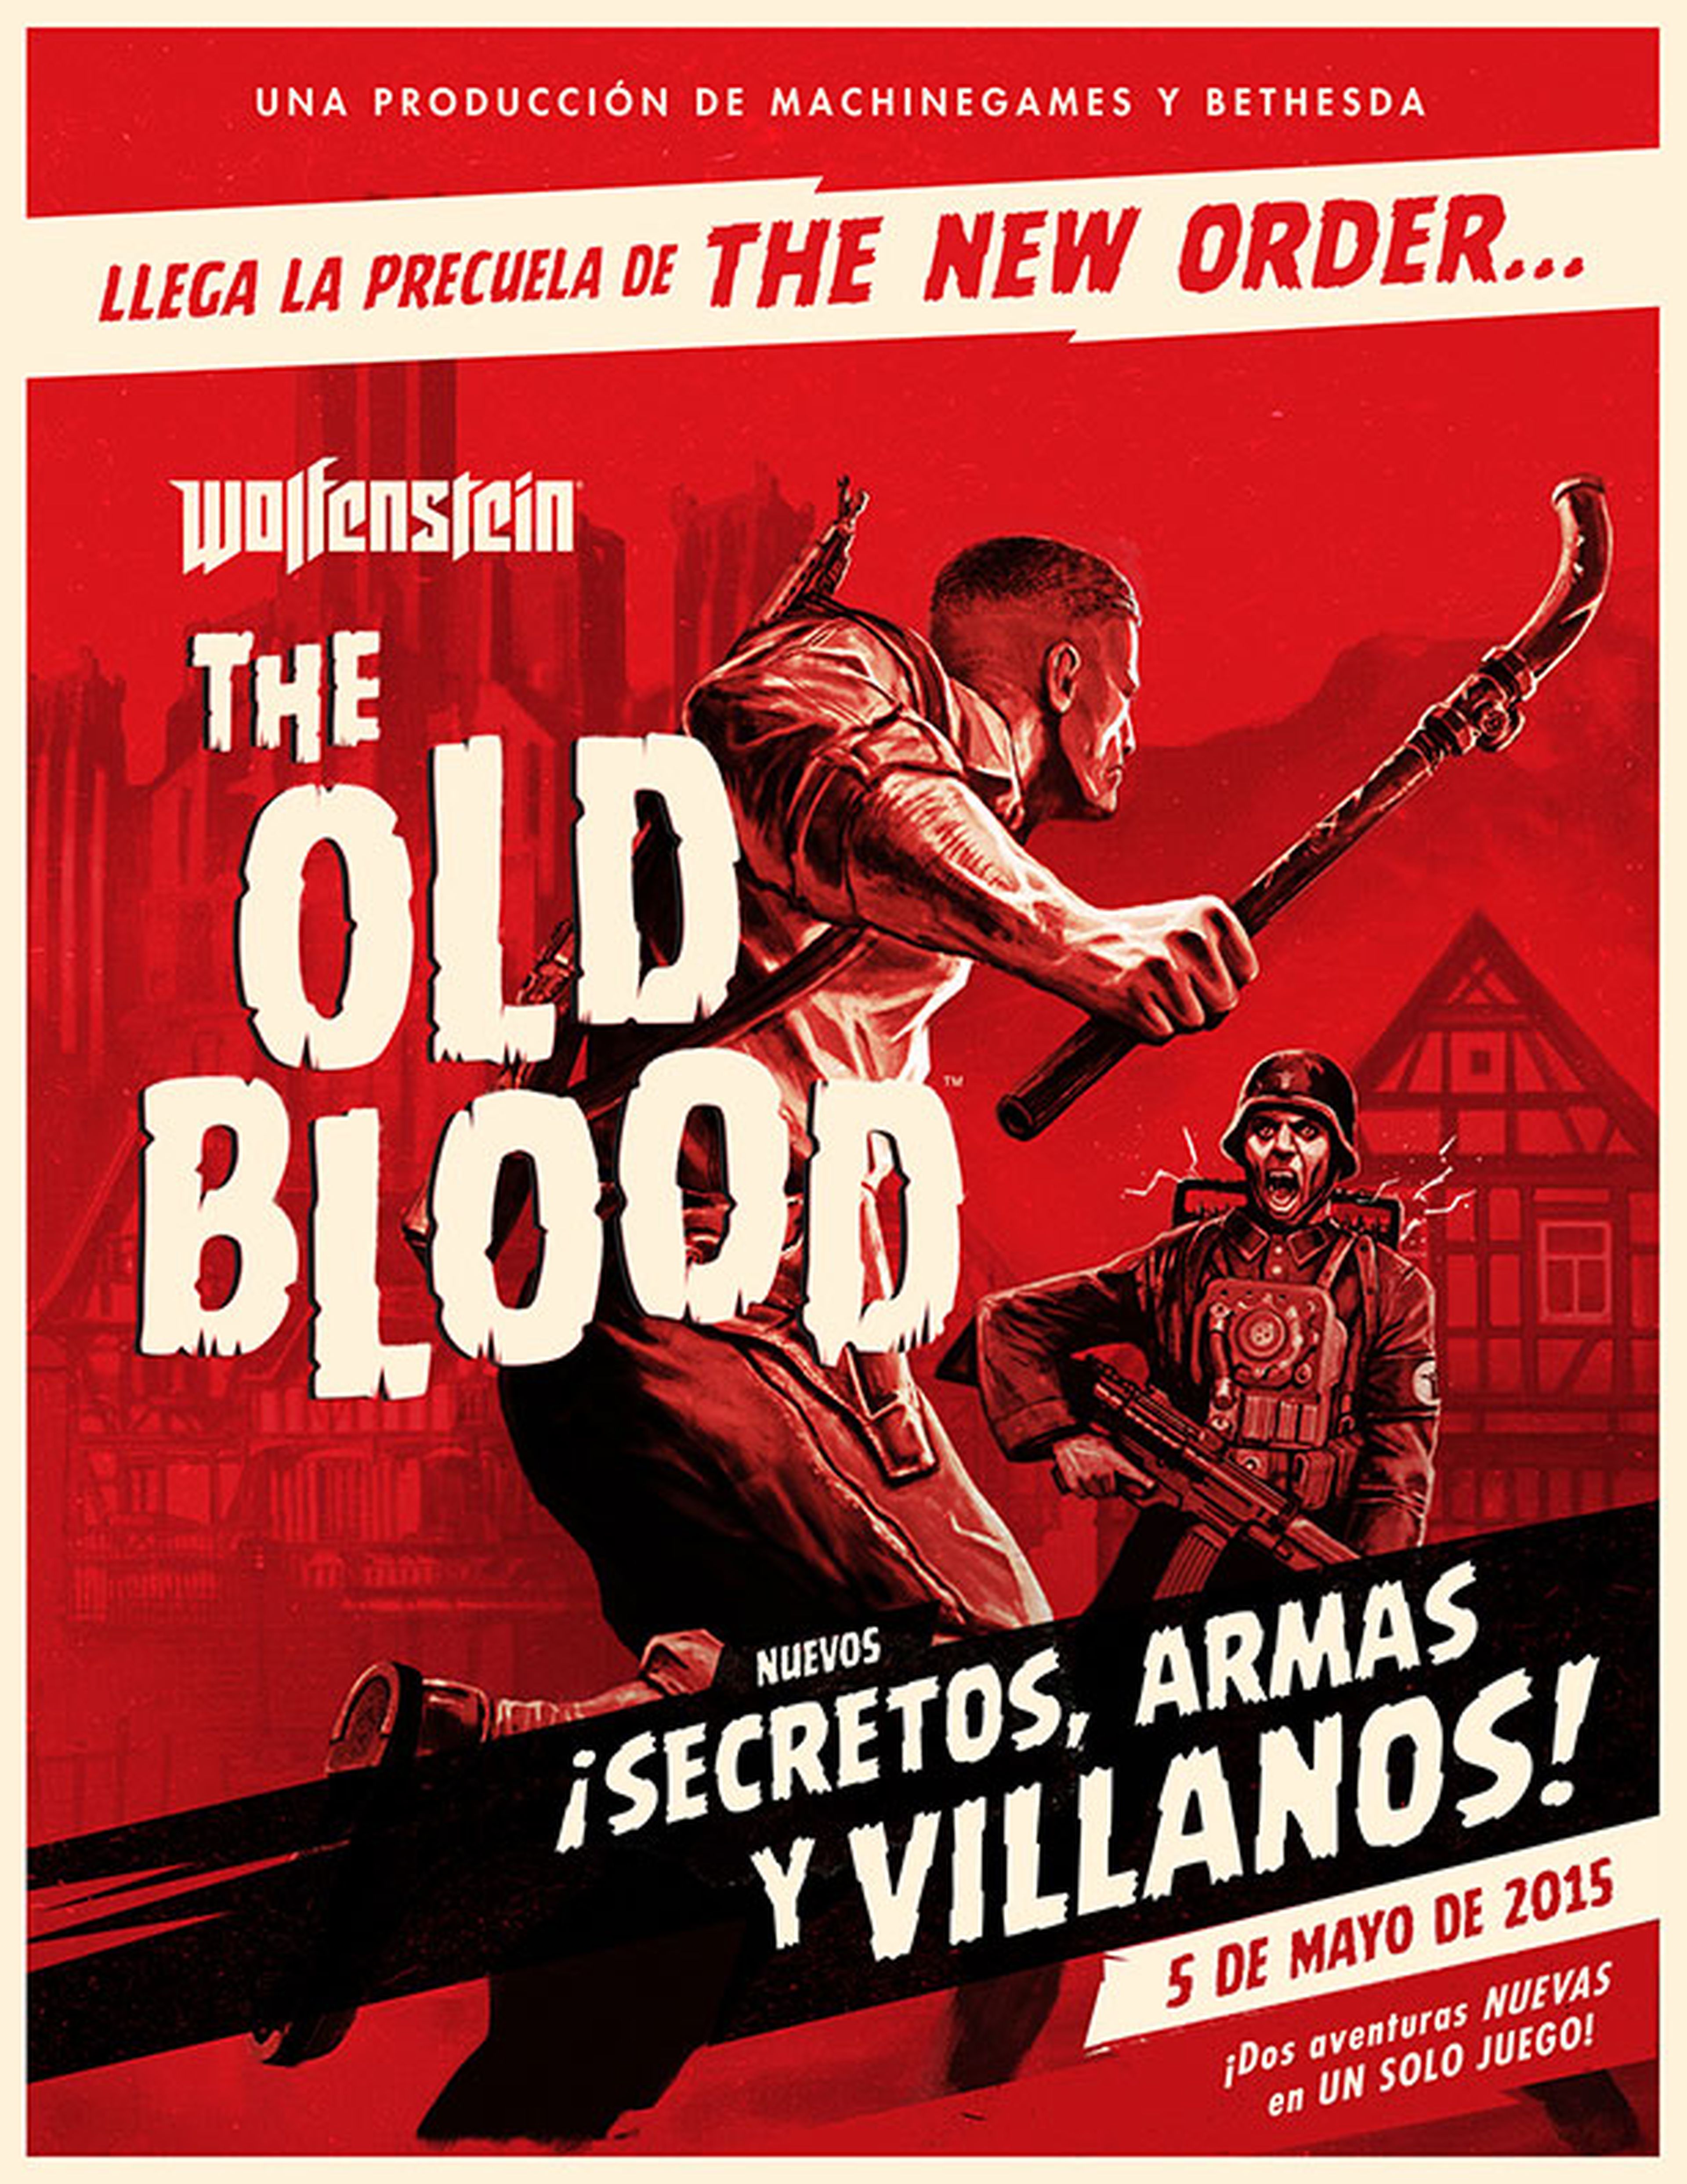 Wolfenstein The Old Blood, precuela de The New Order, anunciado